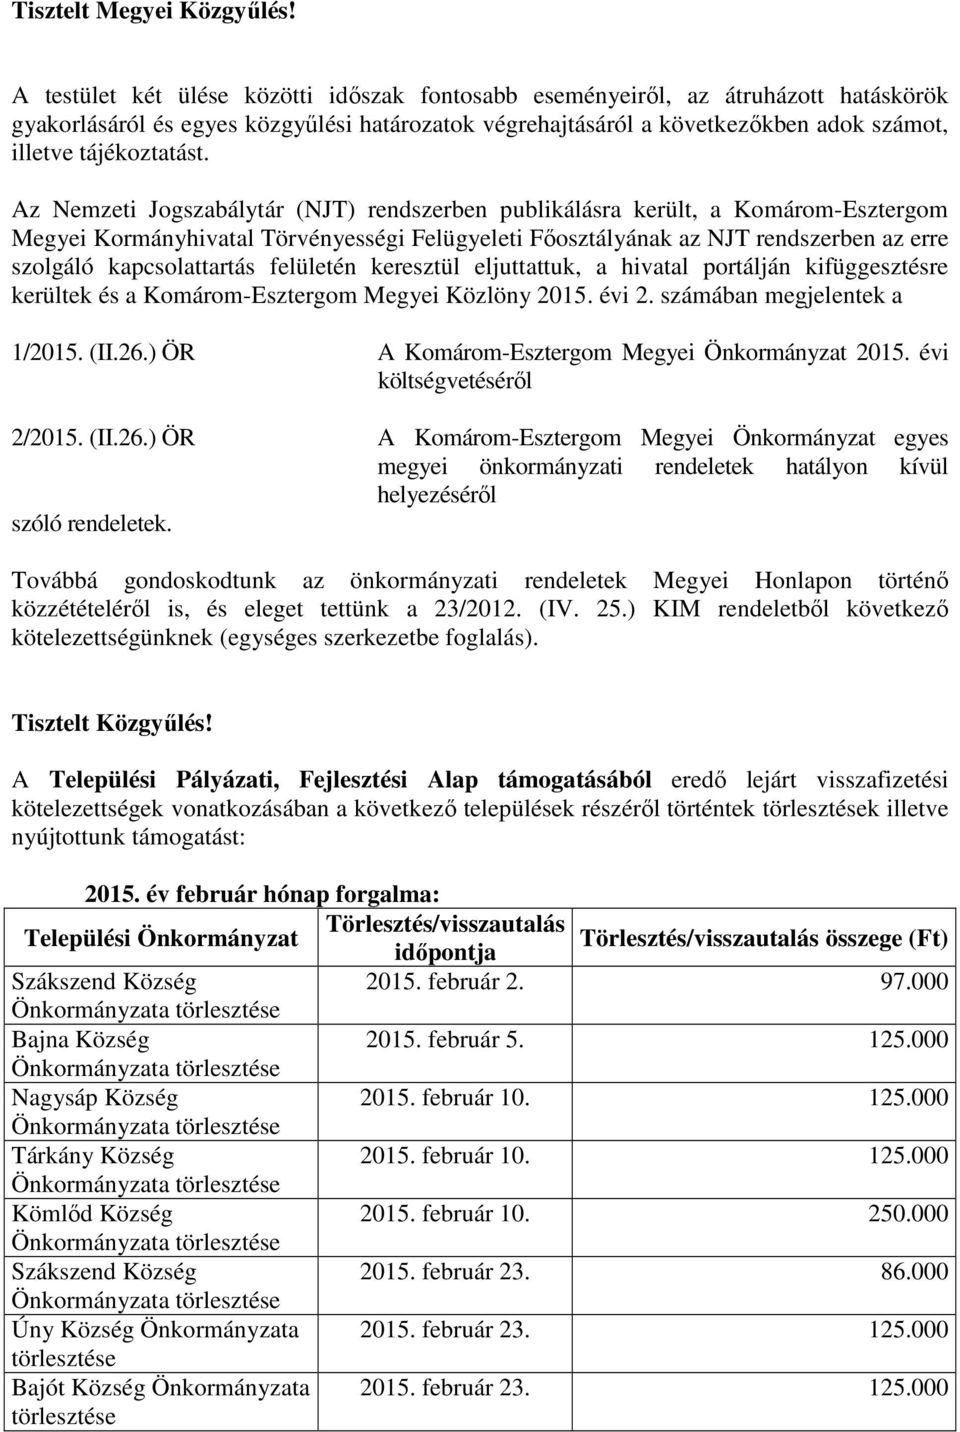 Az Nemzeti Jogszabálytár (NJT) rendszerben publikálásra került, a Komárom-Esztergom Megyei Kormányhivatal Törvényességi Felügyeleti Főosztályának az NJT rendszerben az erre szolgáló kapcsolattartás